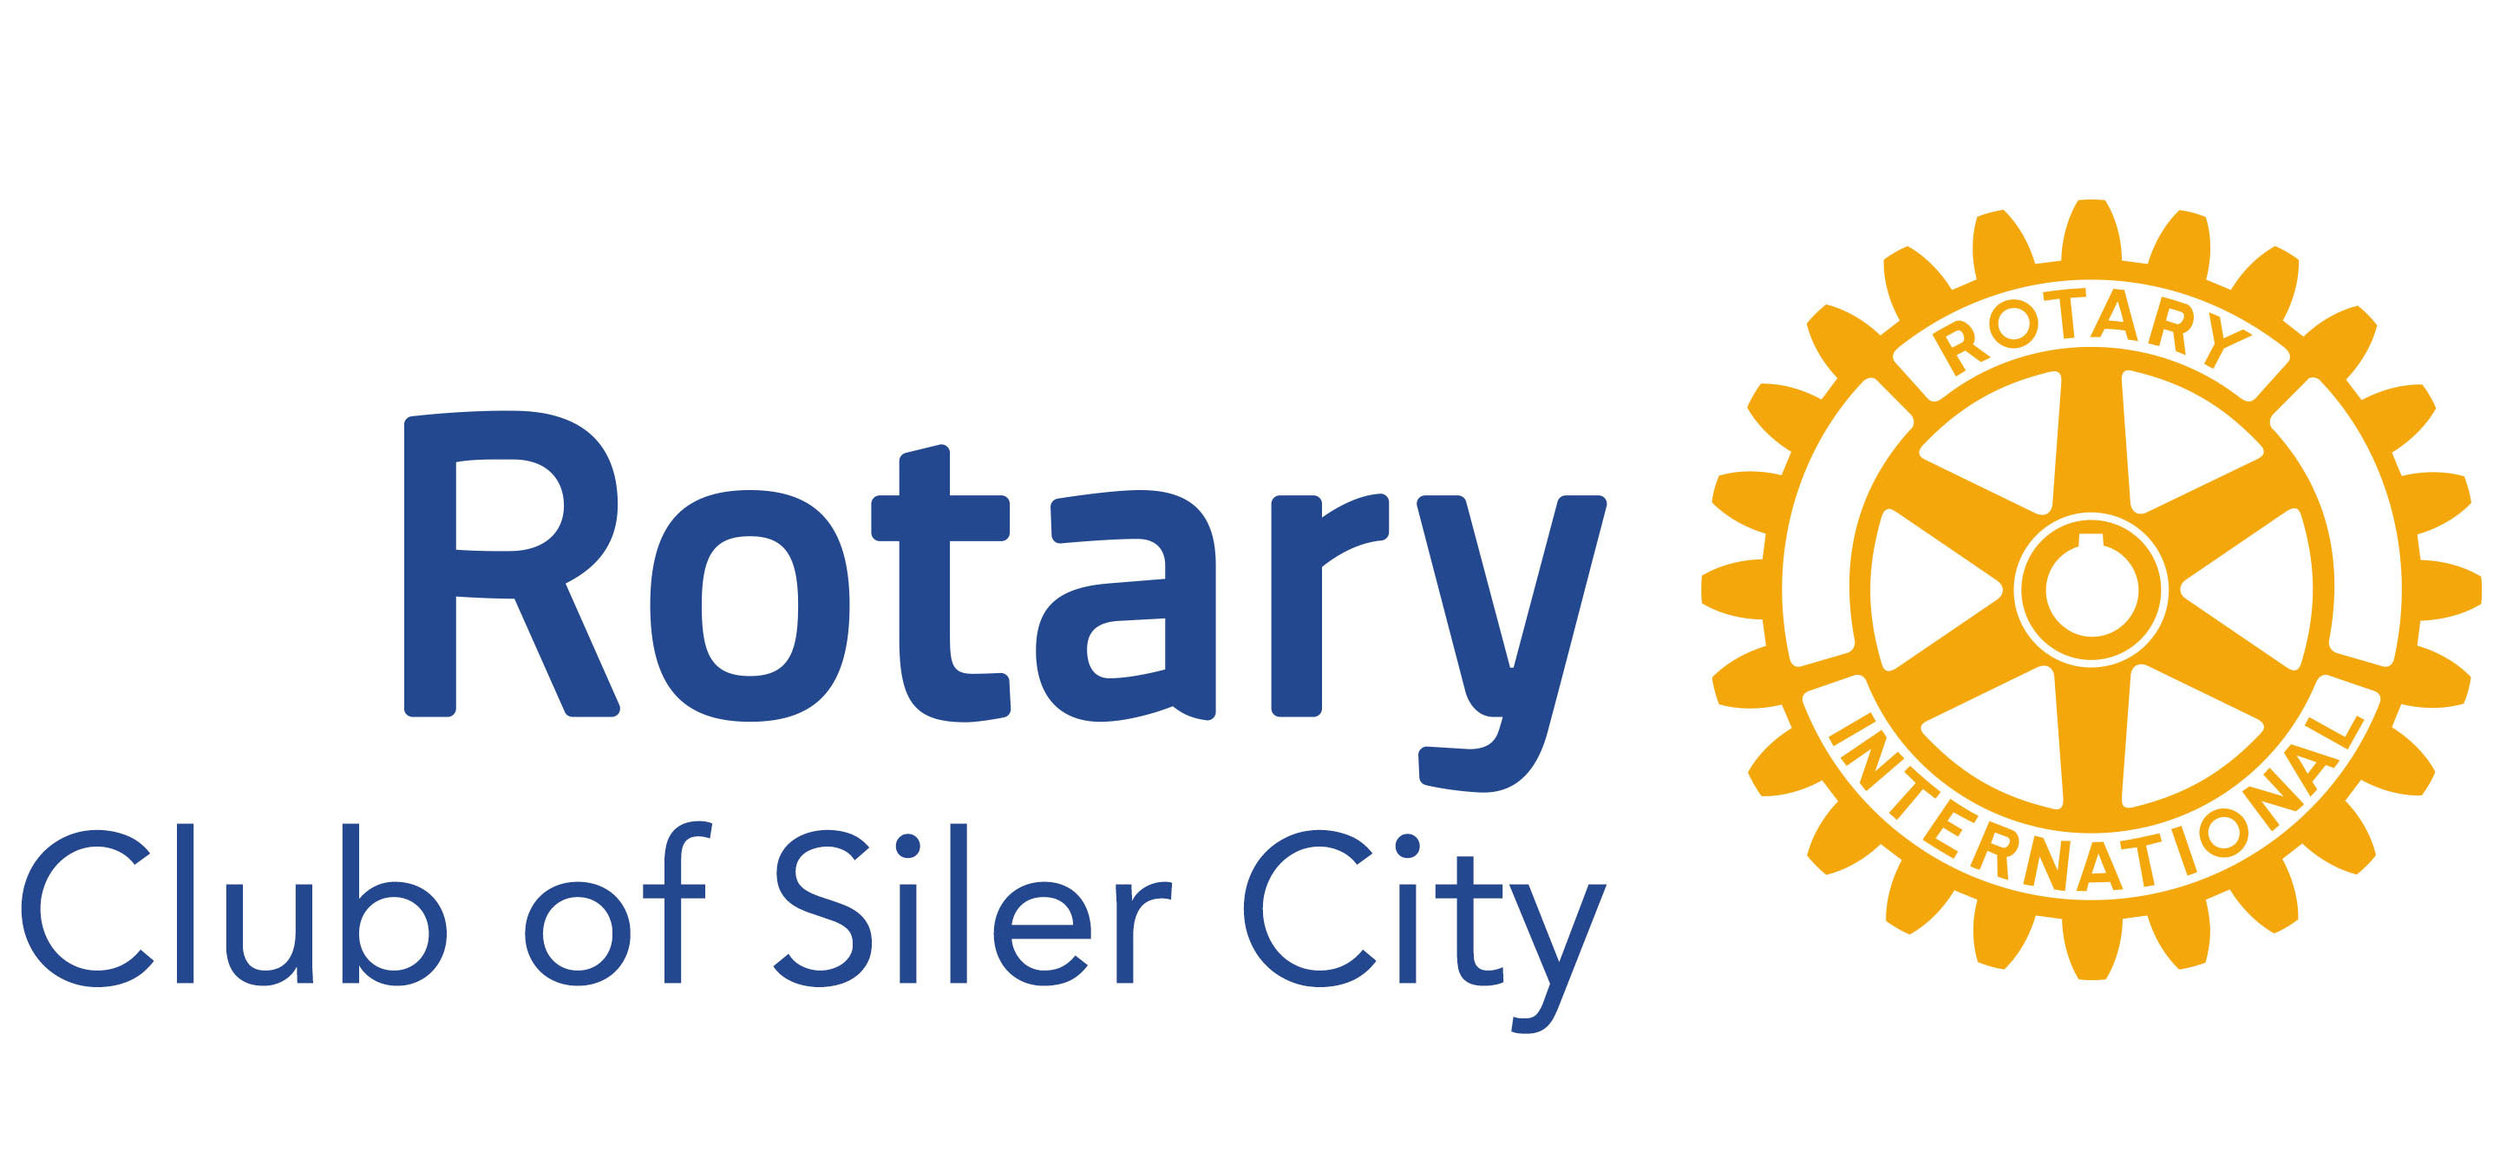 Rotary of Siler City.jpg